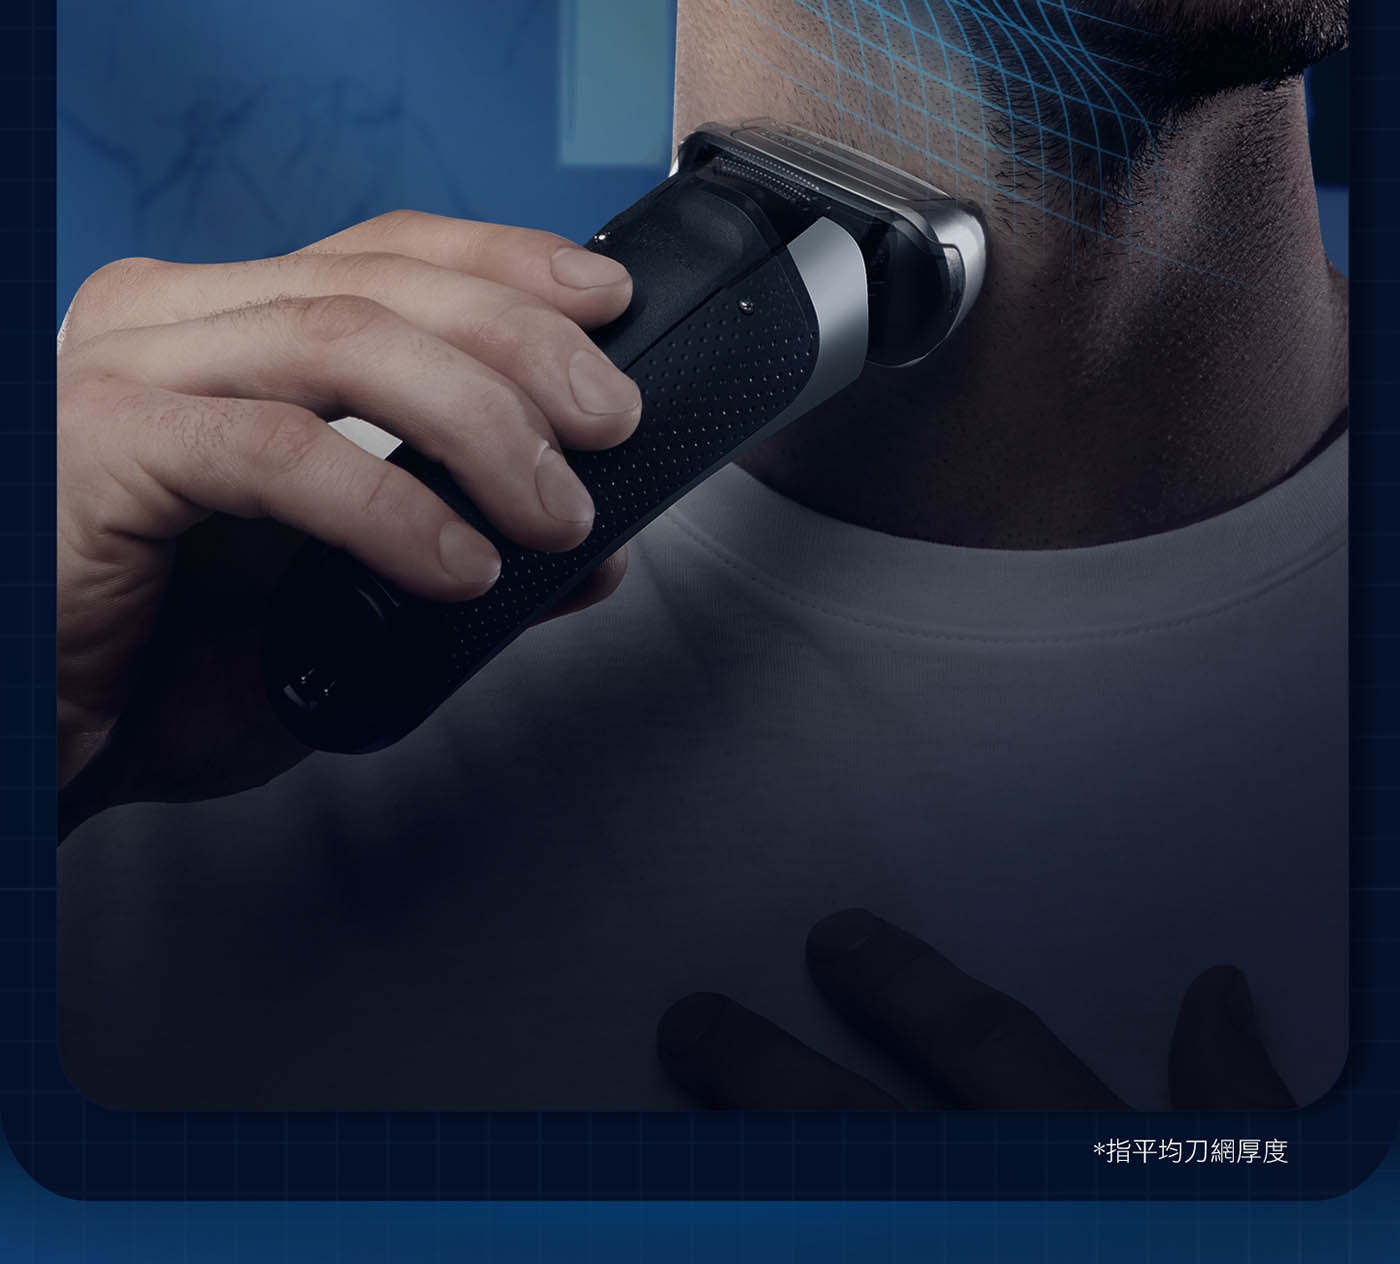 百靈 8系列諧震音波電鬍刀 8410S 德國製造，2年保固，音波科技：自動偵測臉型及鬍鬚濃密度，調整動力剃鬍更潔淨，全機身防水設計，乾濕兩用。